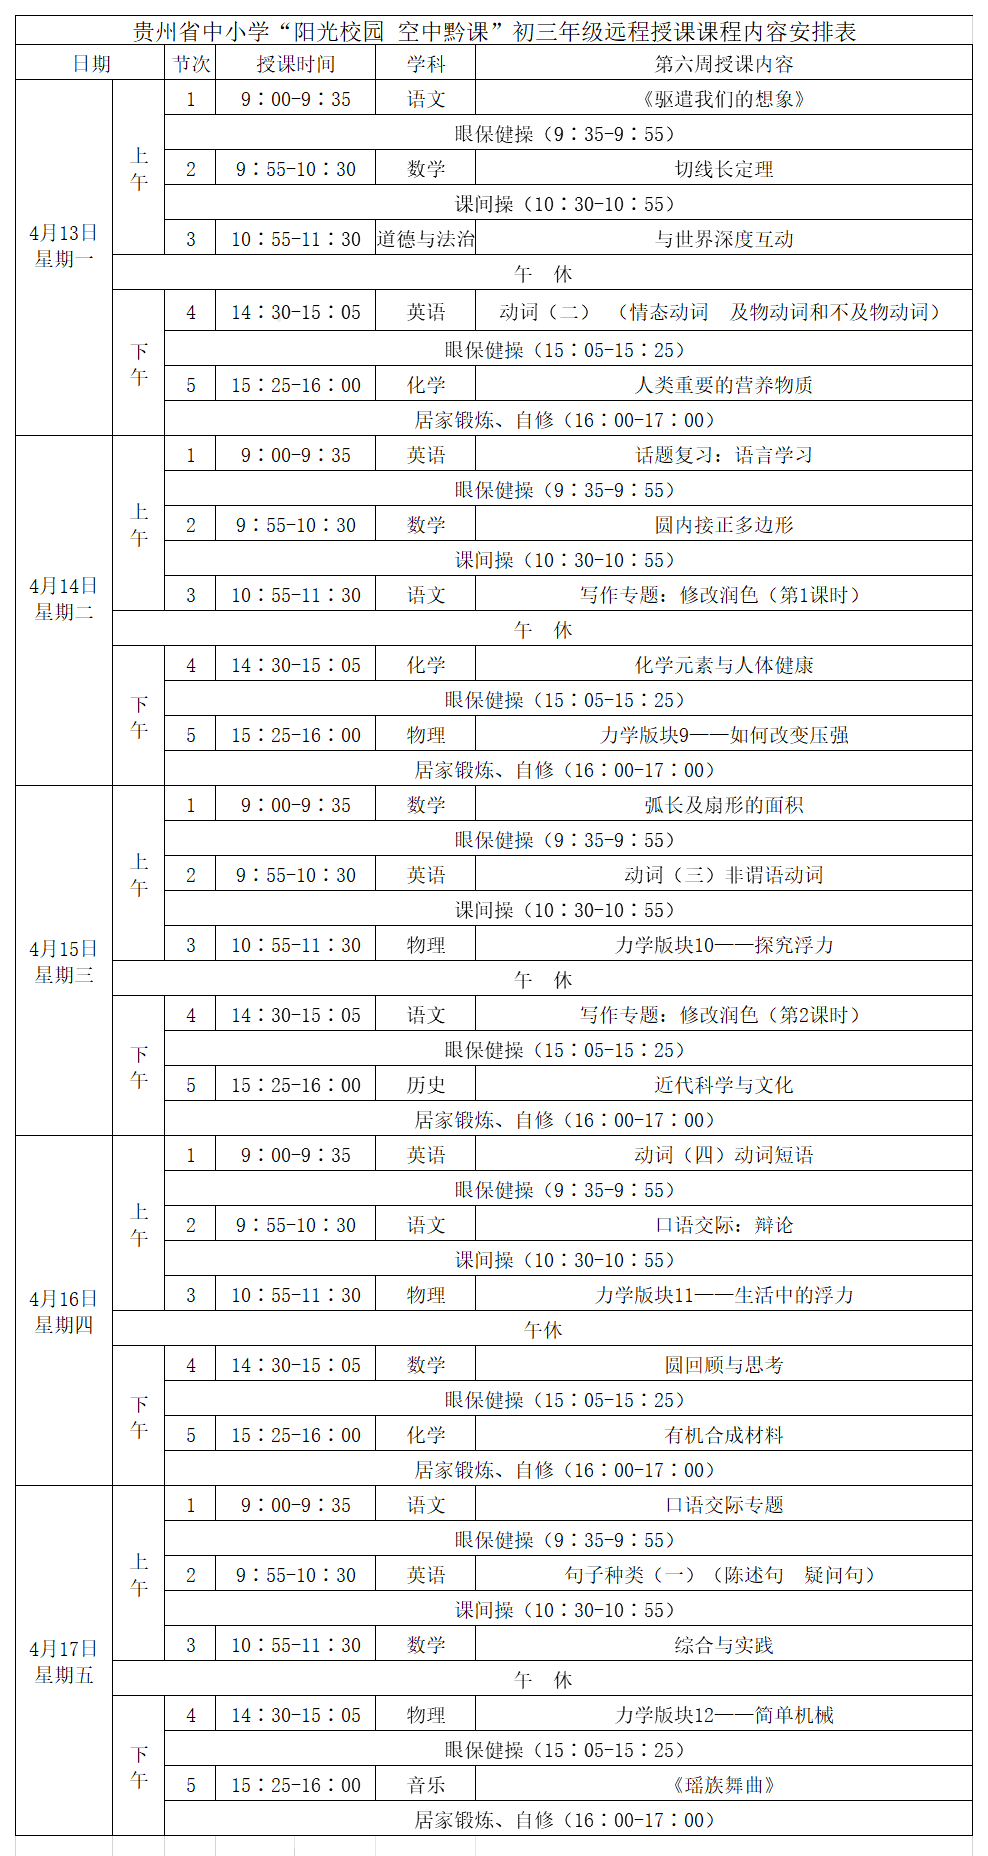 贵州中小学“空中课堂”课程表完整版公布（4月13日1